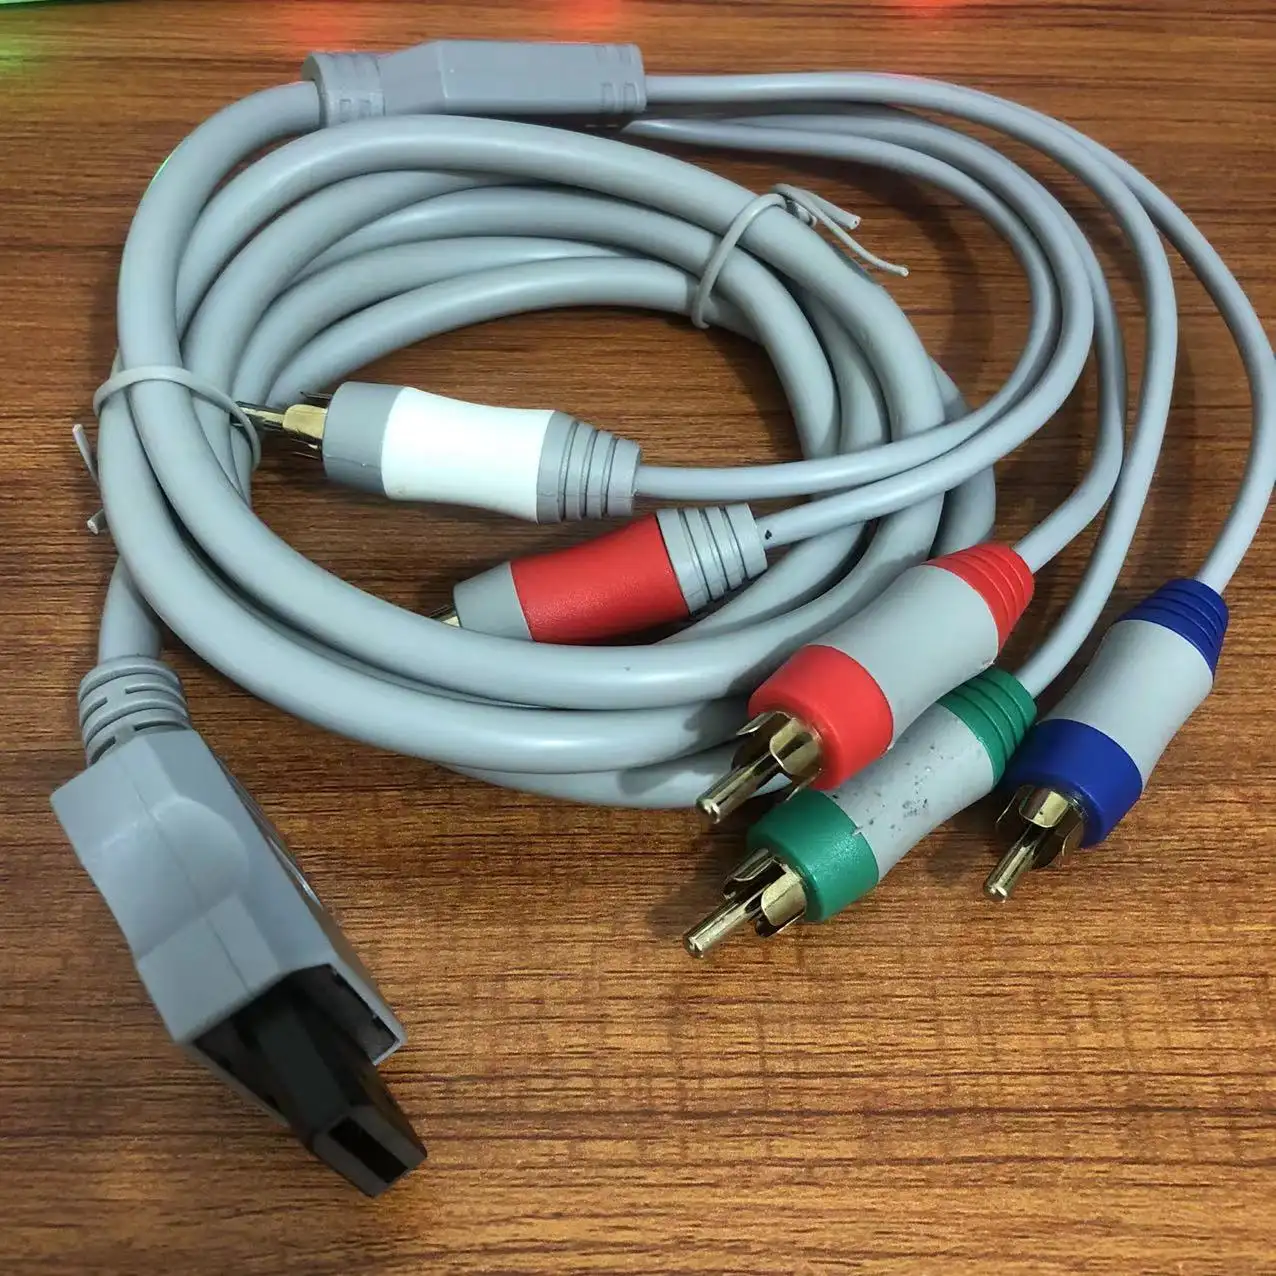 Kabel Komponen AV untuk Wii ke HDTV, Video Game TV aksesori konektor AV Kabel Komponen